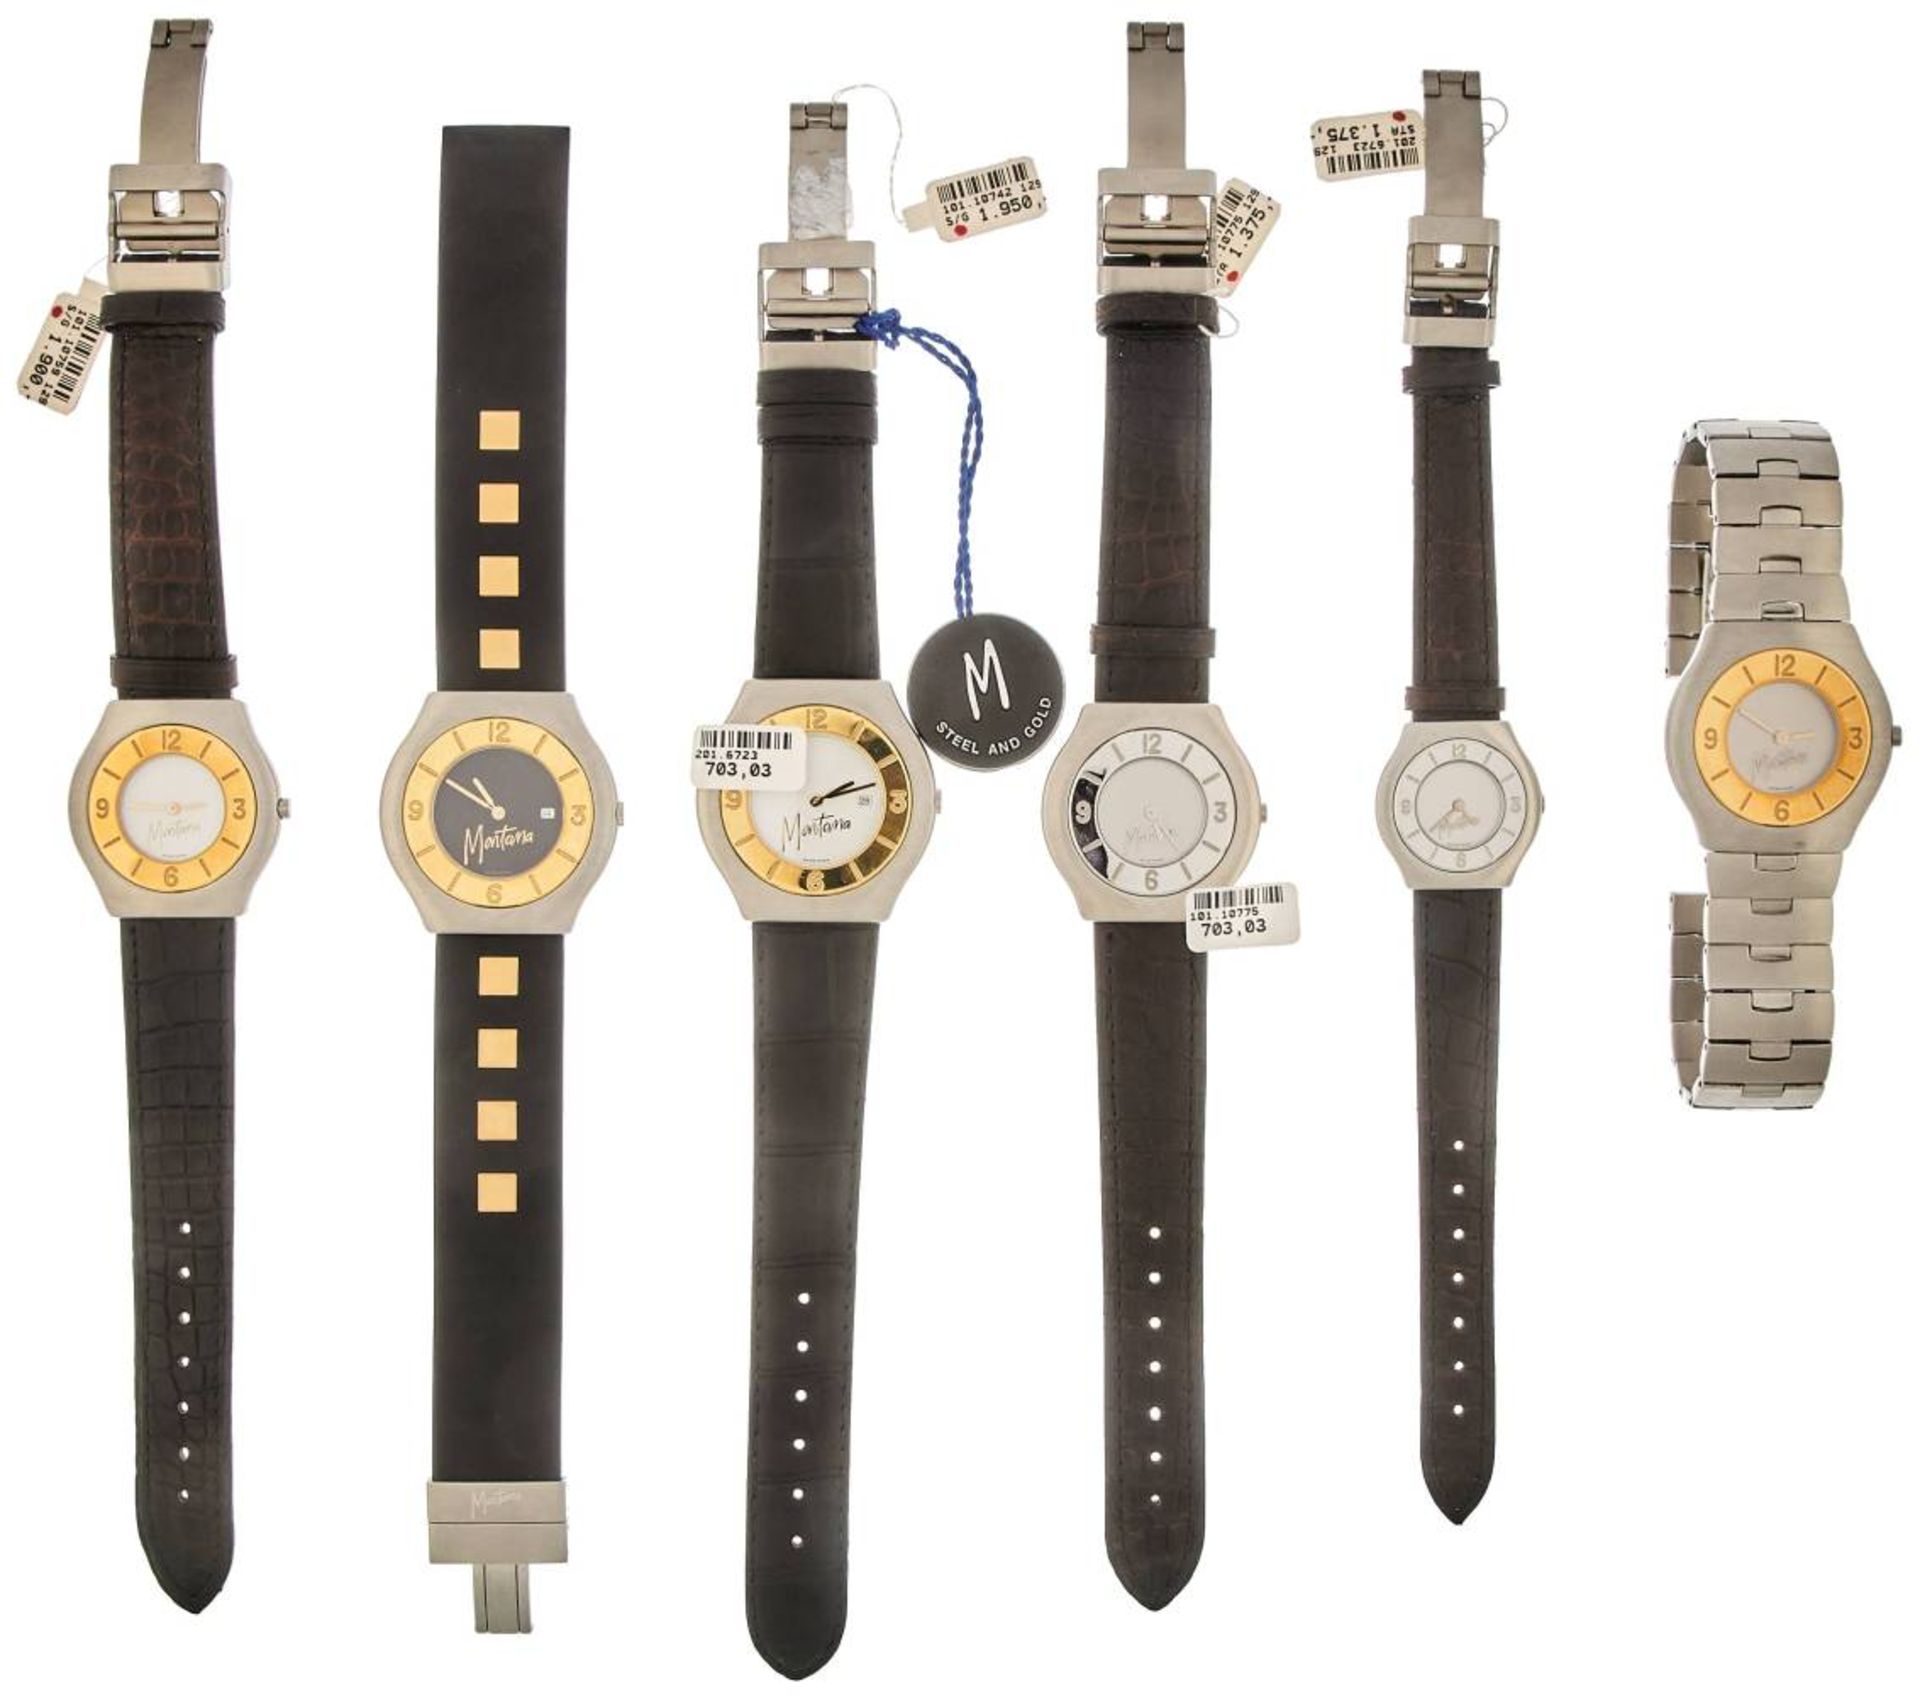 Montana Watch Company Herren/Damen Armbanduhren. Sammlung von 6 Montana Armbanduhren in Gold/